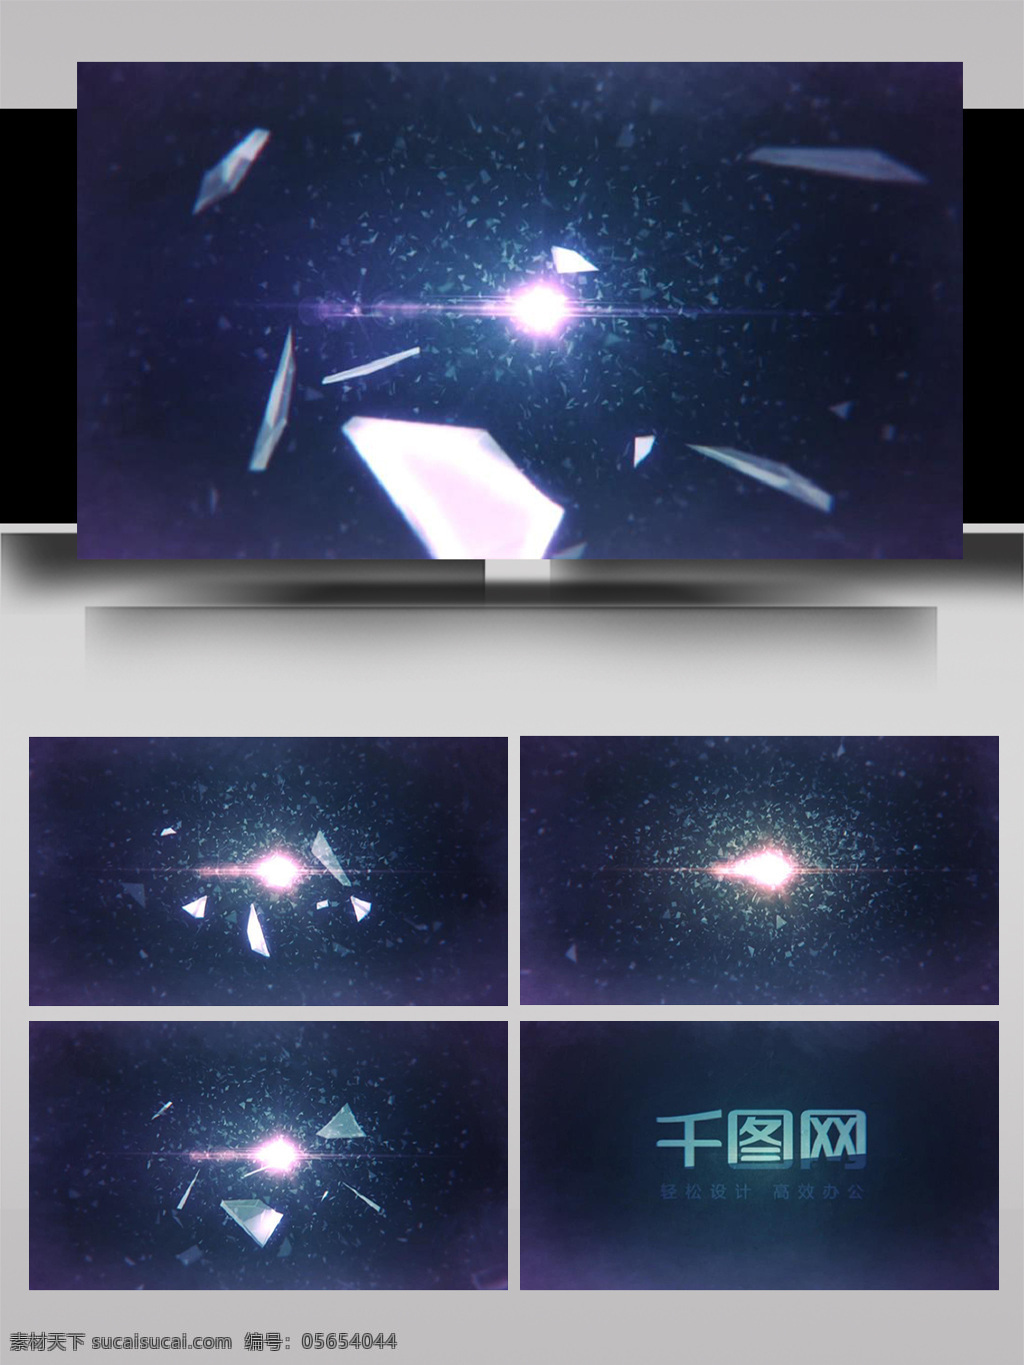 科幻 虚拟 碎片 组合 切换 展示 ae 模板 宇宙 大气 标志 3d标志 震撼 金属 光影 动态 logo 片头